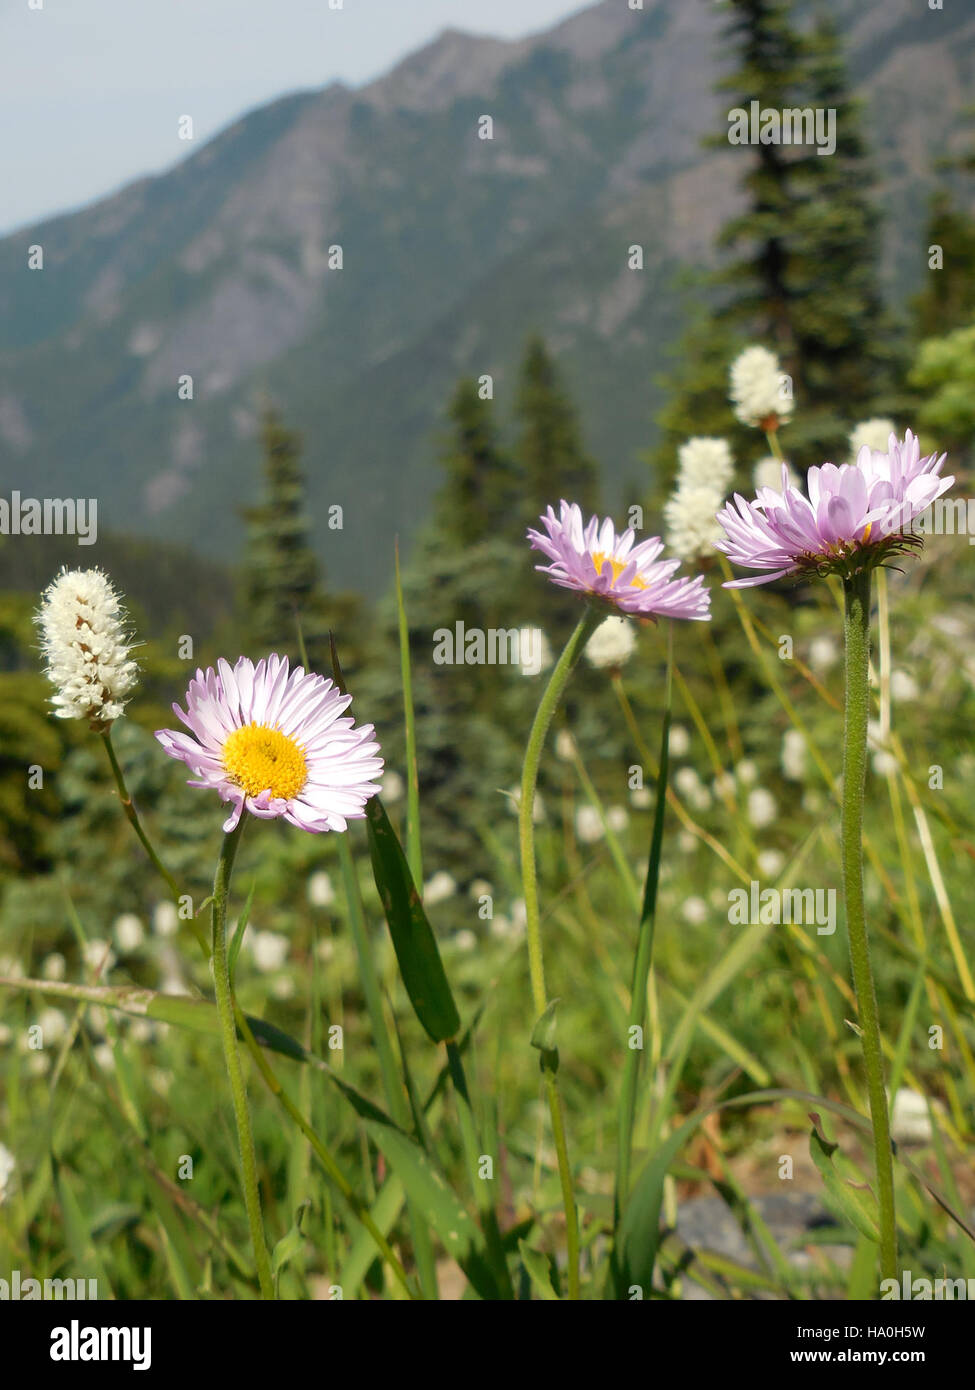 olympicnps 17302896145 three purple pink fleabane flower alpine wildflowers hurricane ridge c bubar june 27 2014 Stock Photo